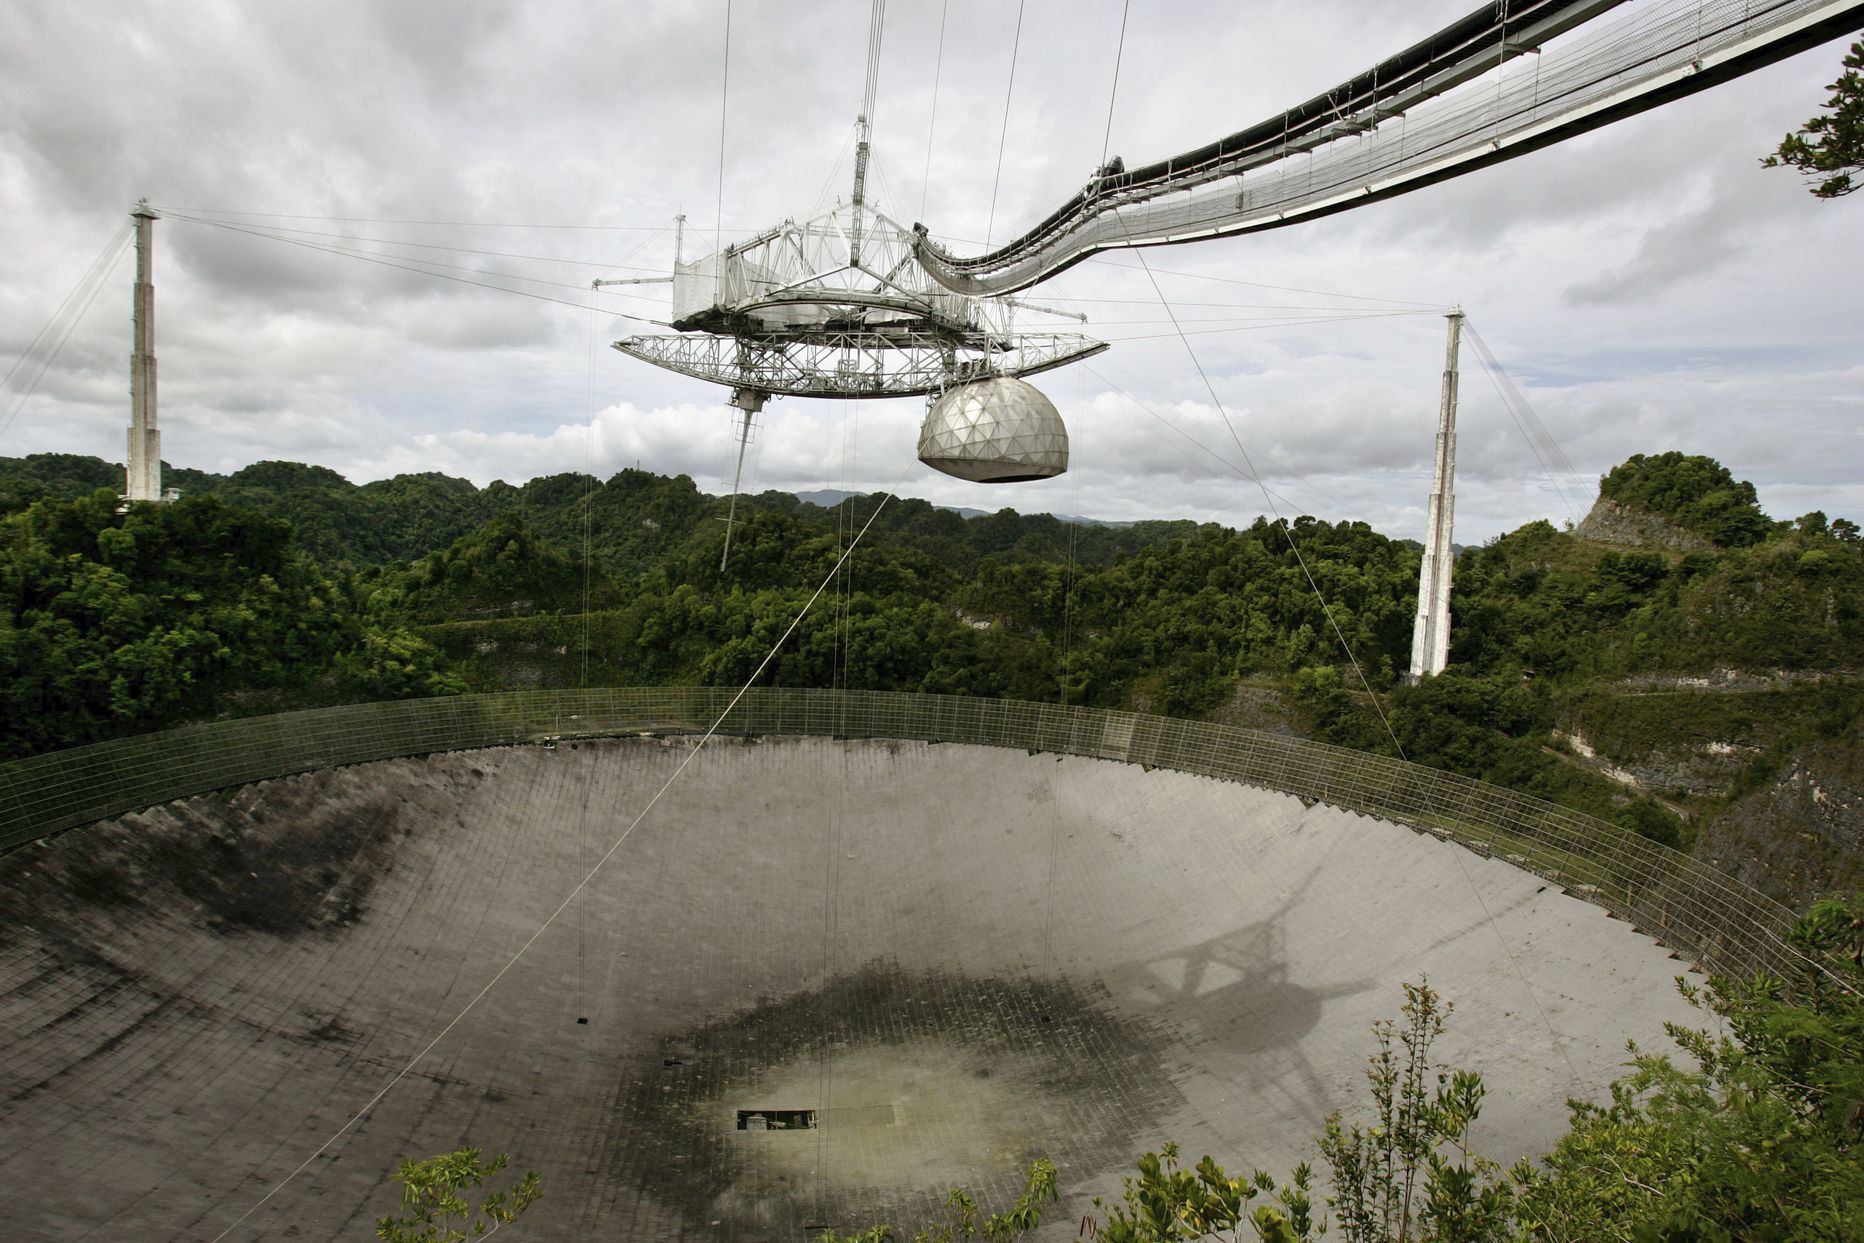 Puerto Rico Arecibo observatooriumi suur raadioteleskoop